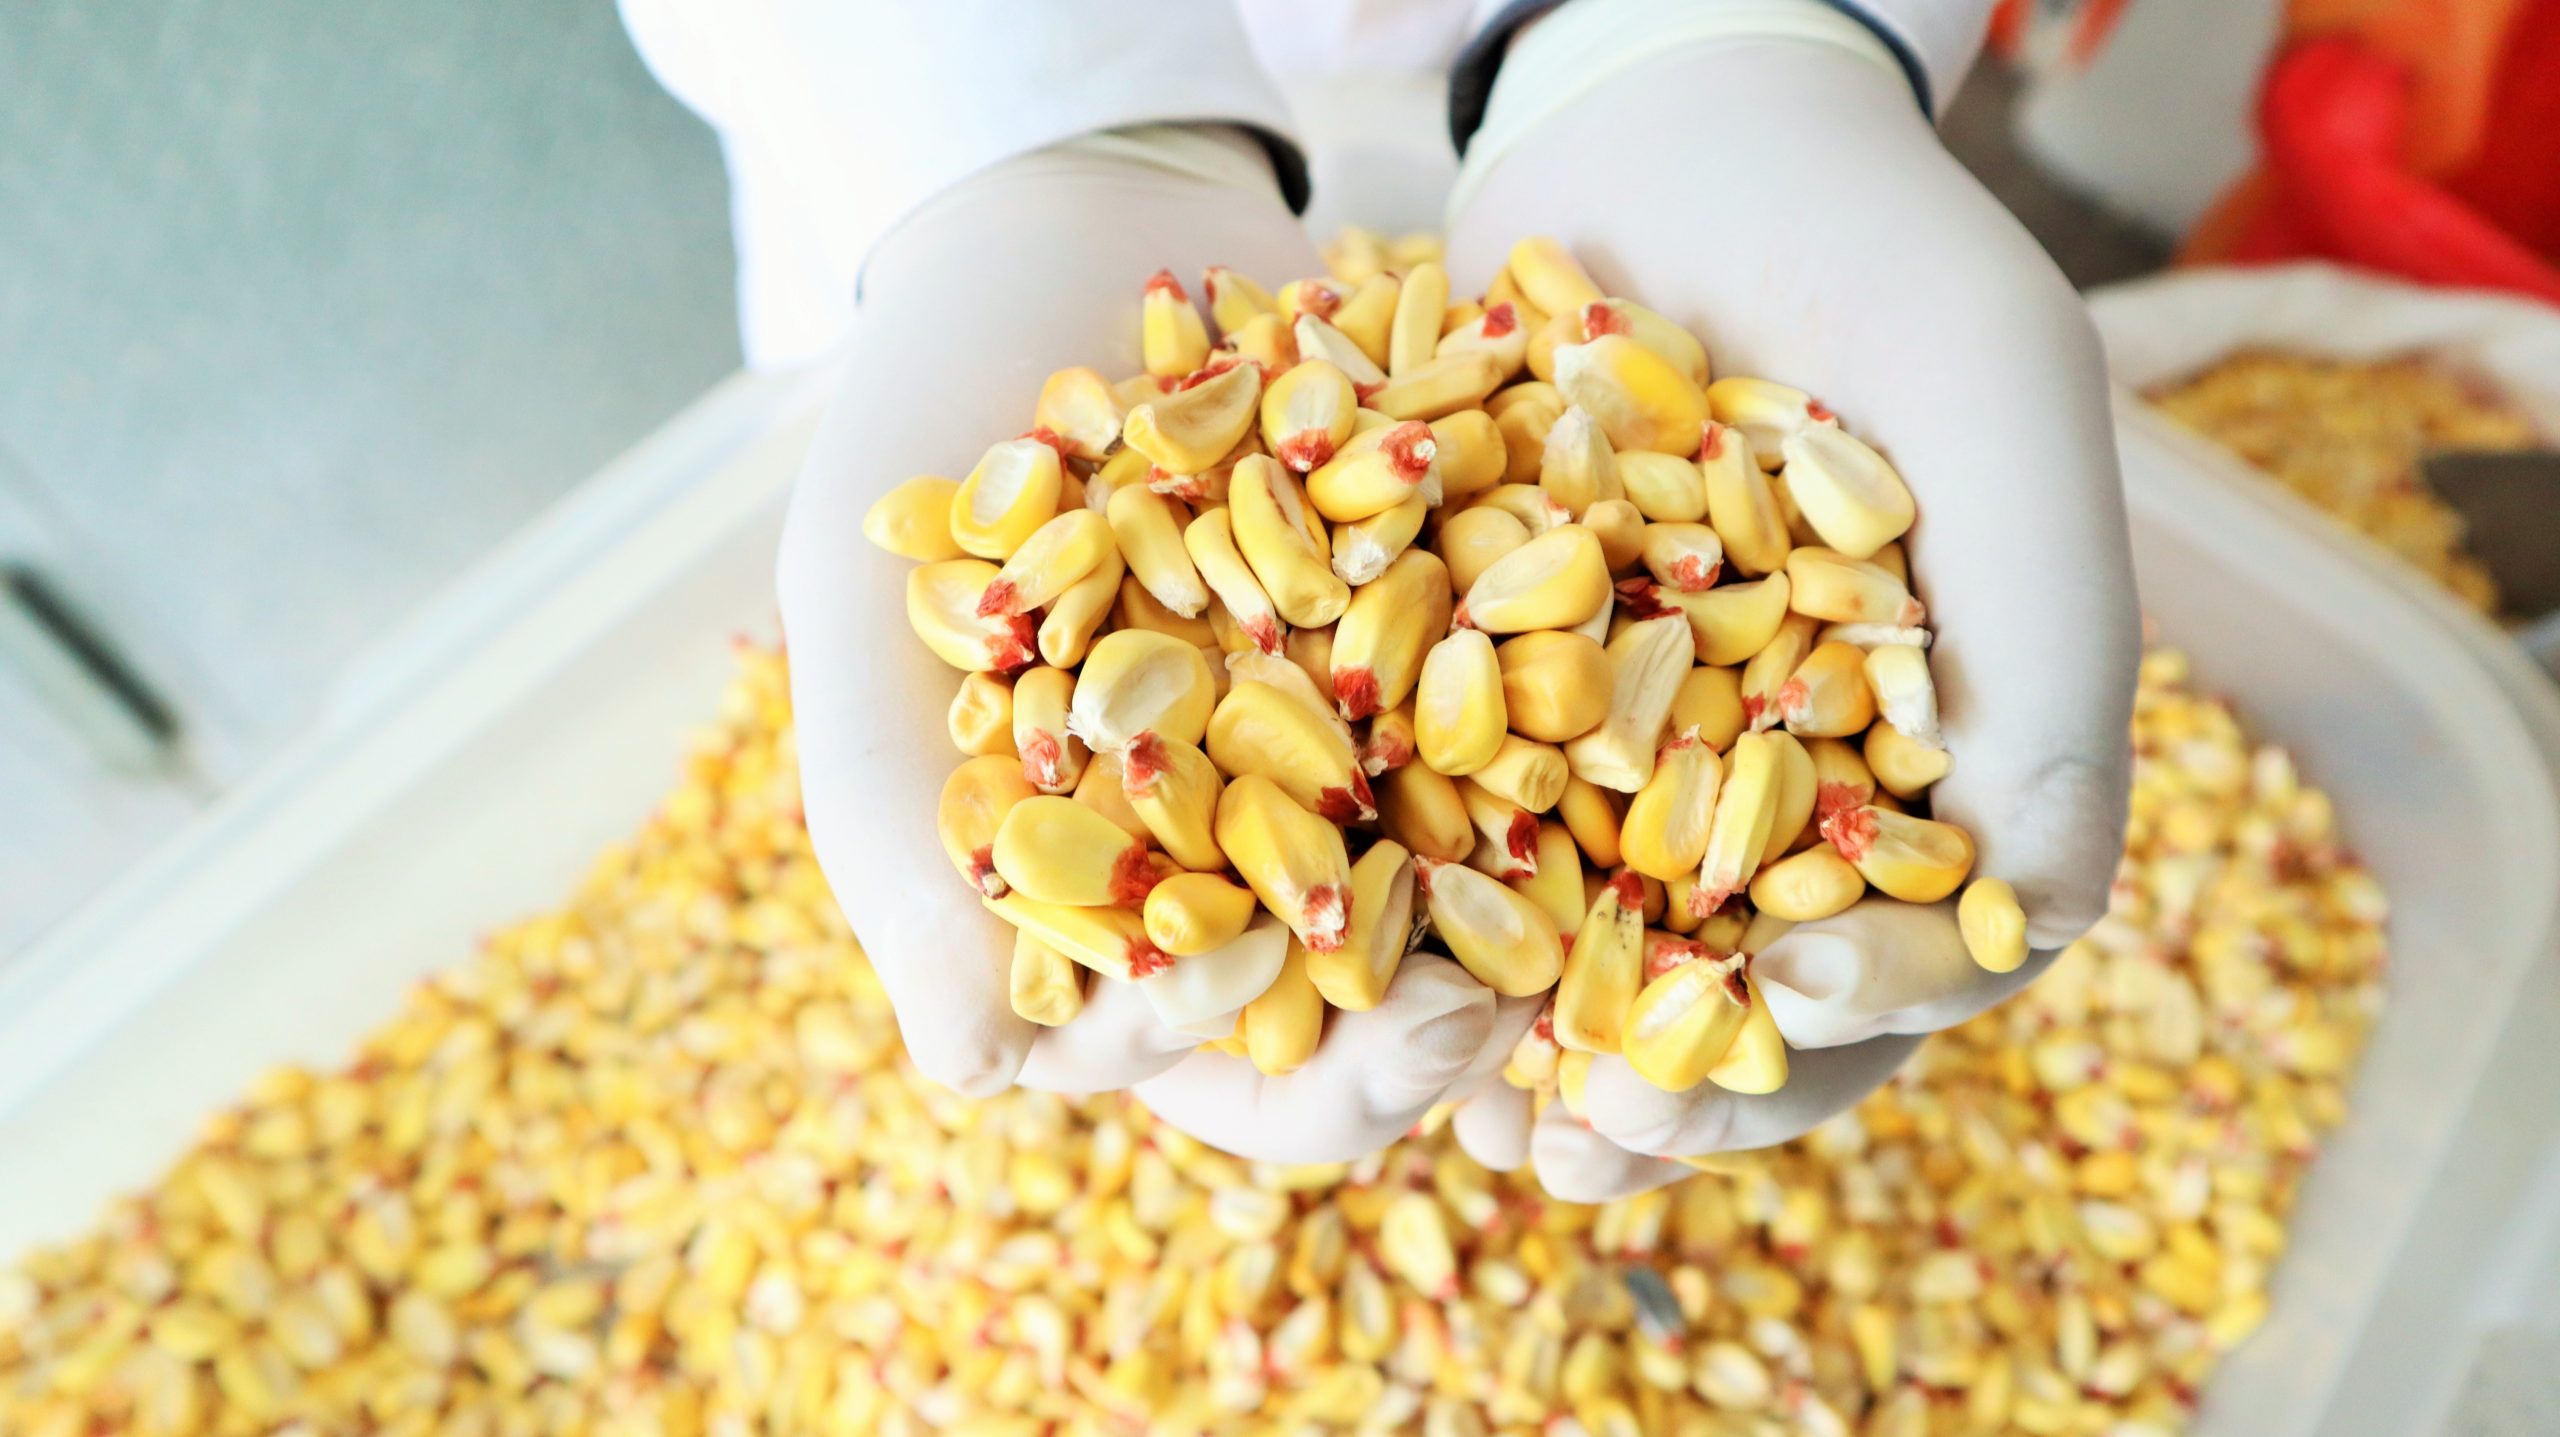 Productores del valle del Mantaro consolidan agroexportación de maíz amiláceo a Ecuador